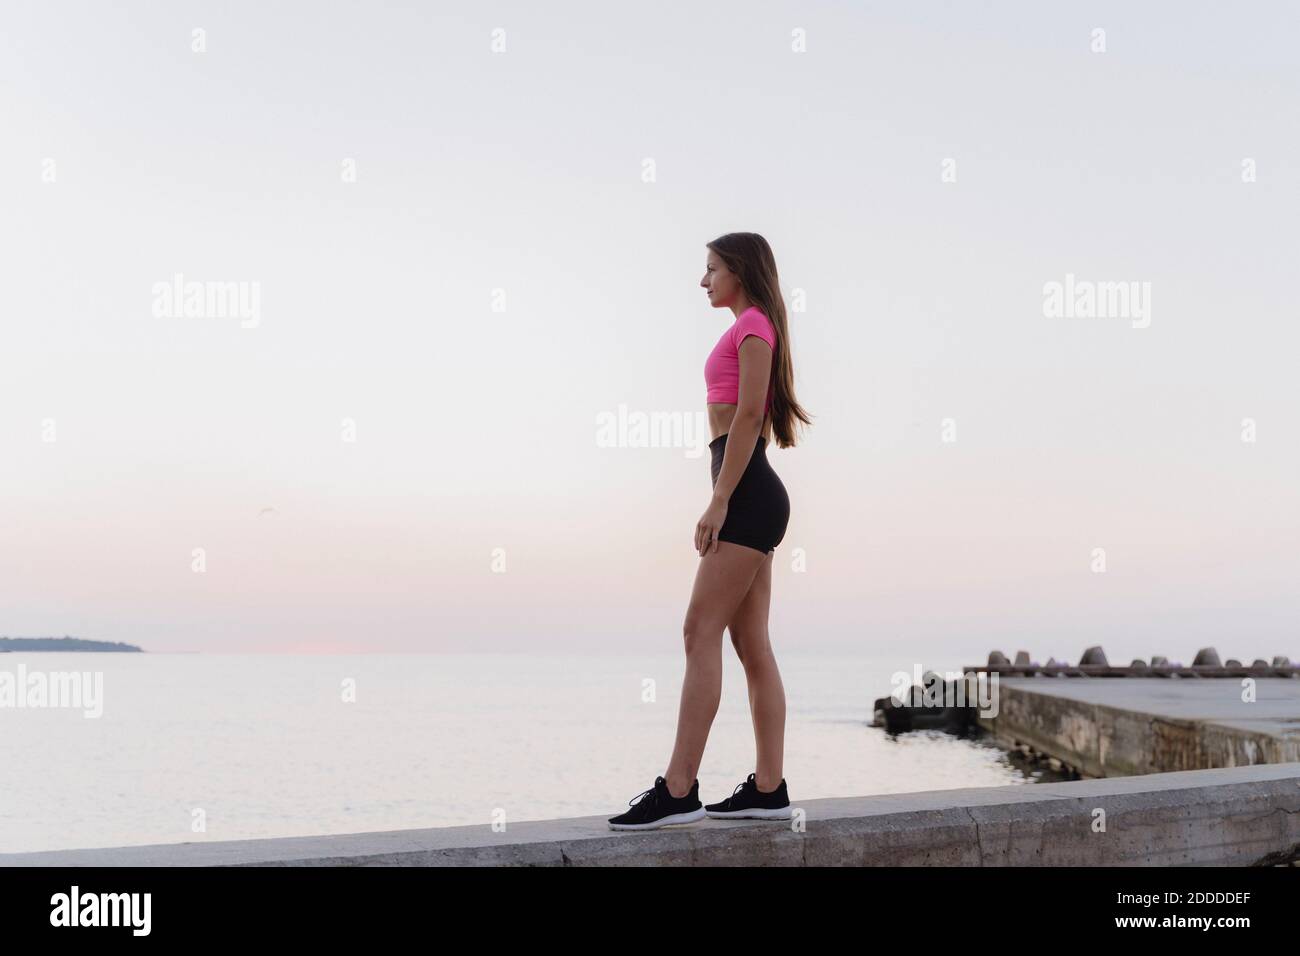 L'athlète admirant la vue sur la mer debout sur le mur de retenue contre clair ciel Banque D'Images